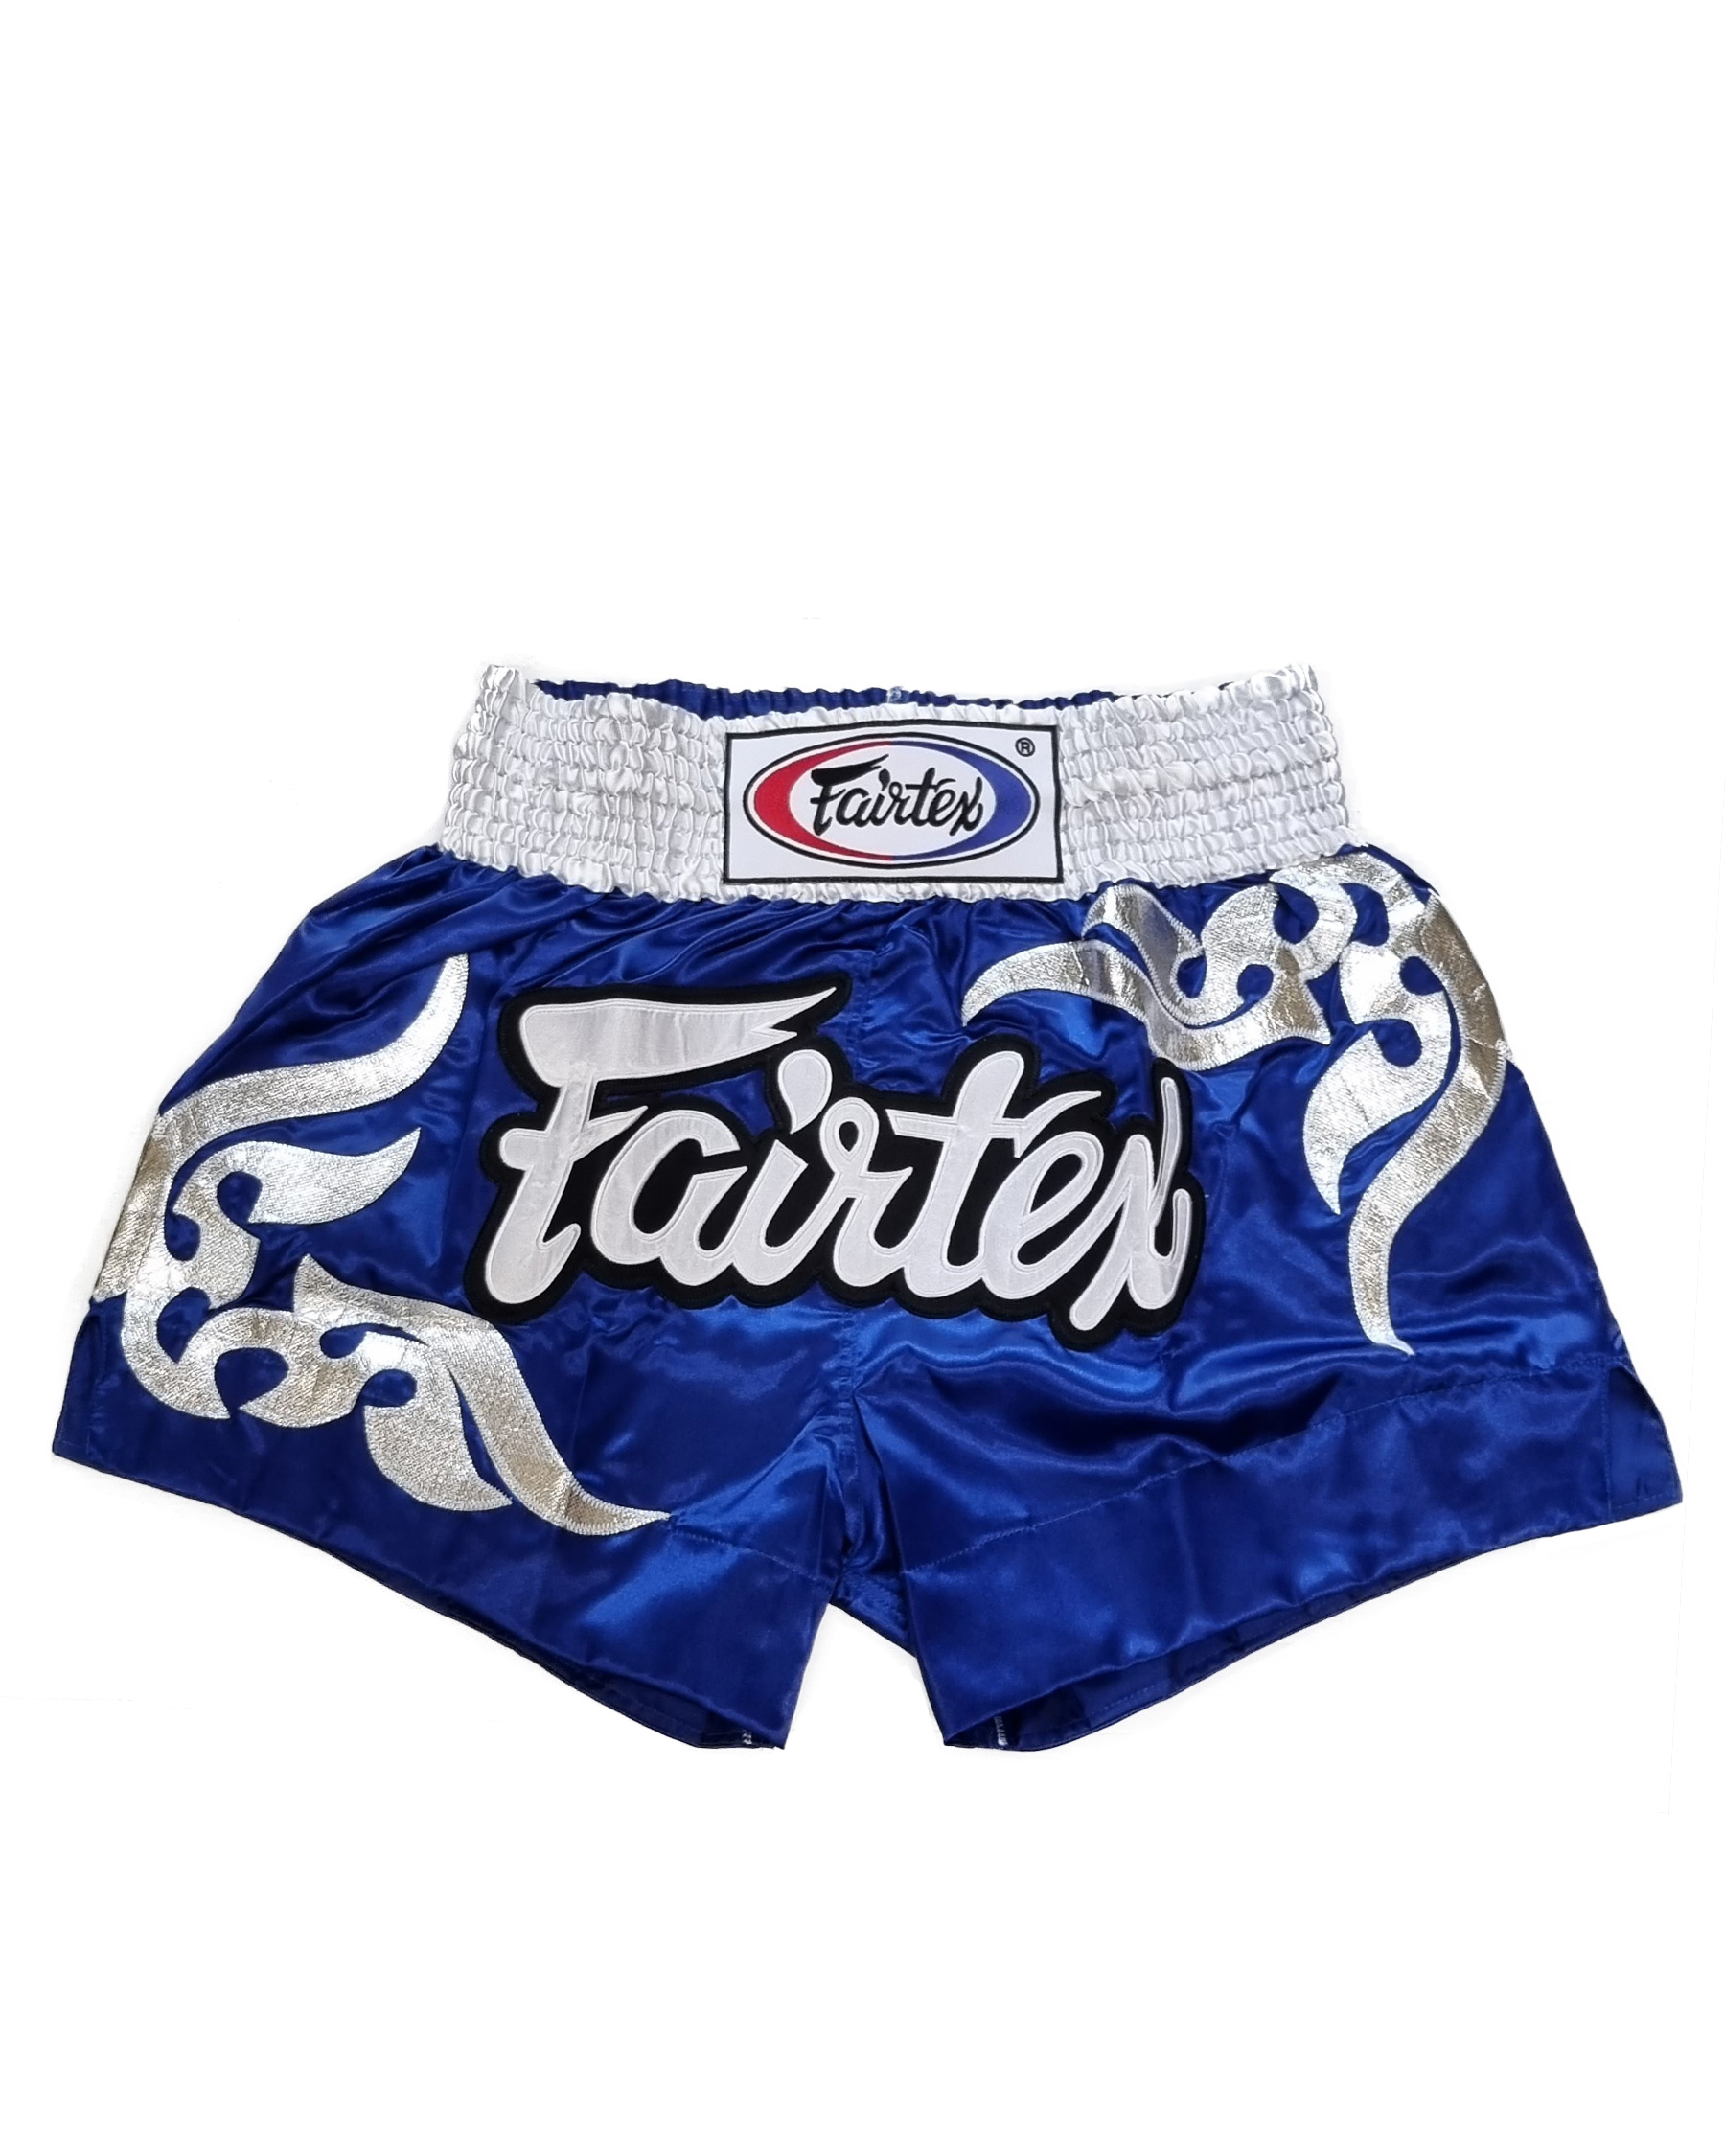 Fairtex BS0624 Muay Thai shorts Glorious